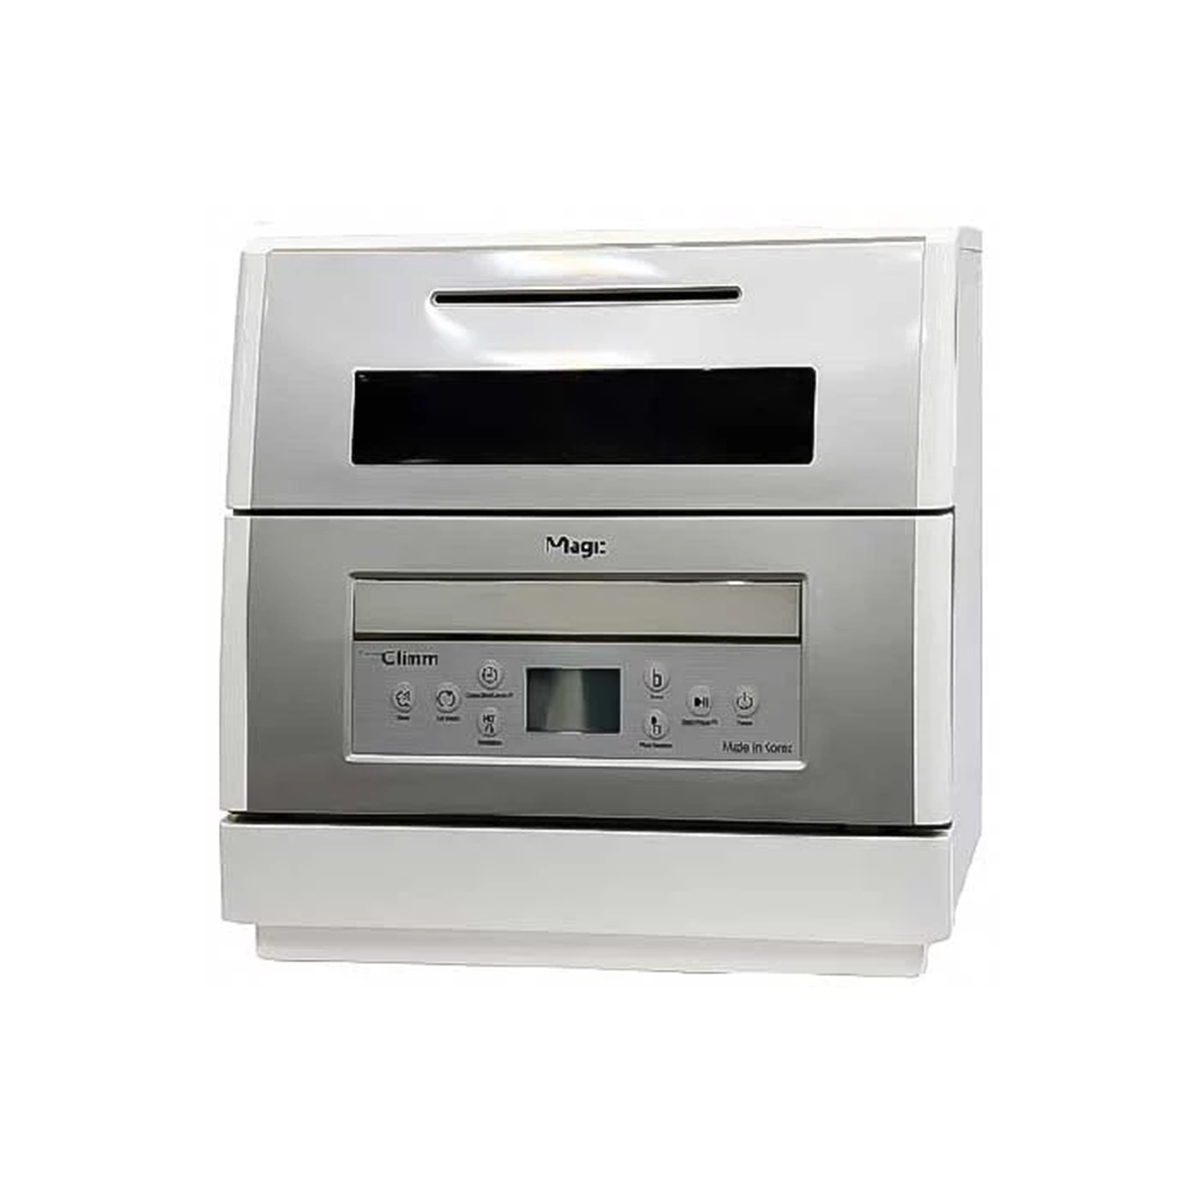 ماشین ظرفشویی مجیک ظرفیت 6 نفره مدل KOR-1107A